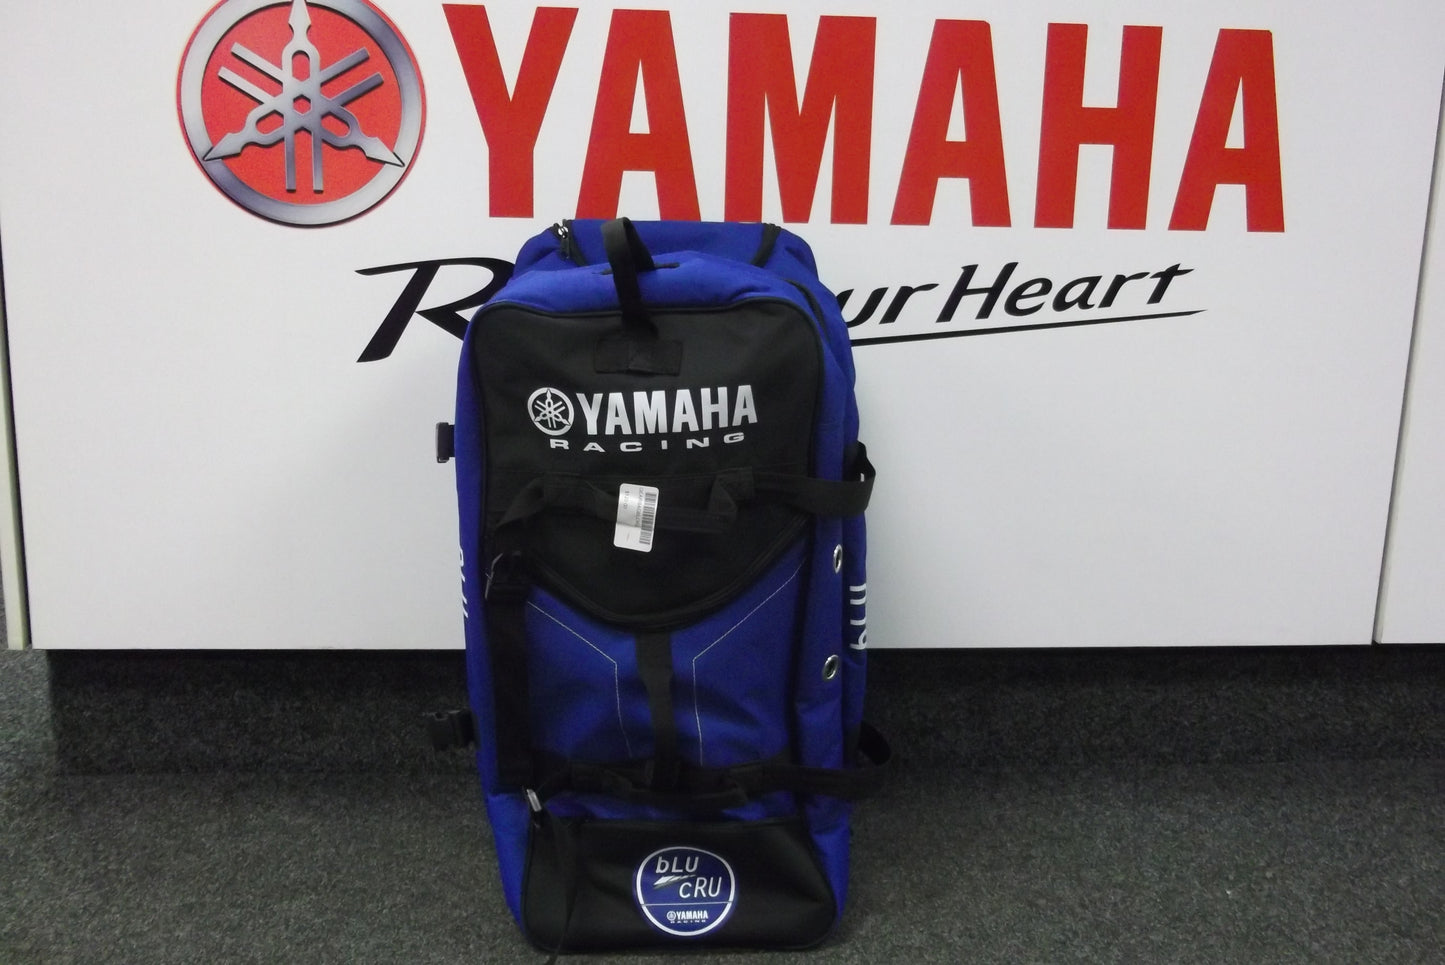 Yamaha bLU cRU Gear Luggage Bag